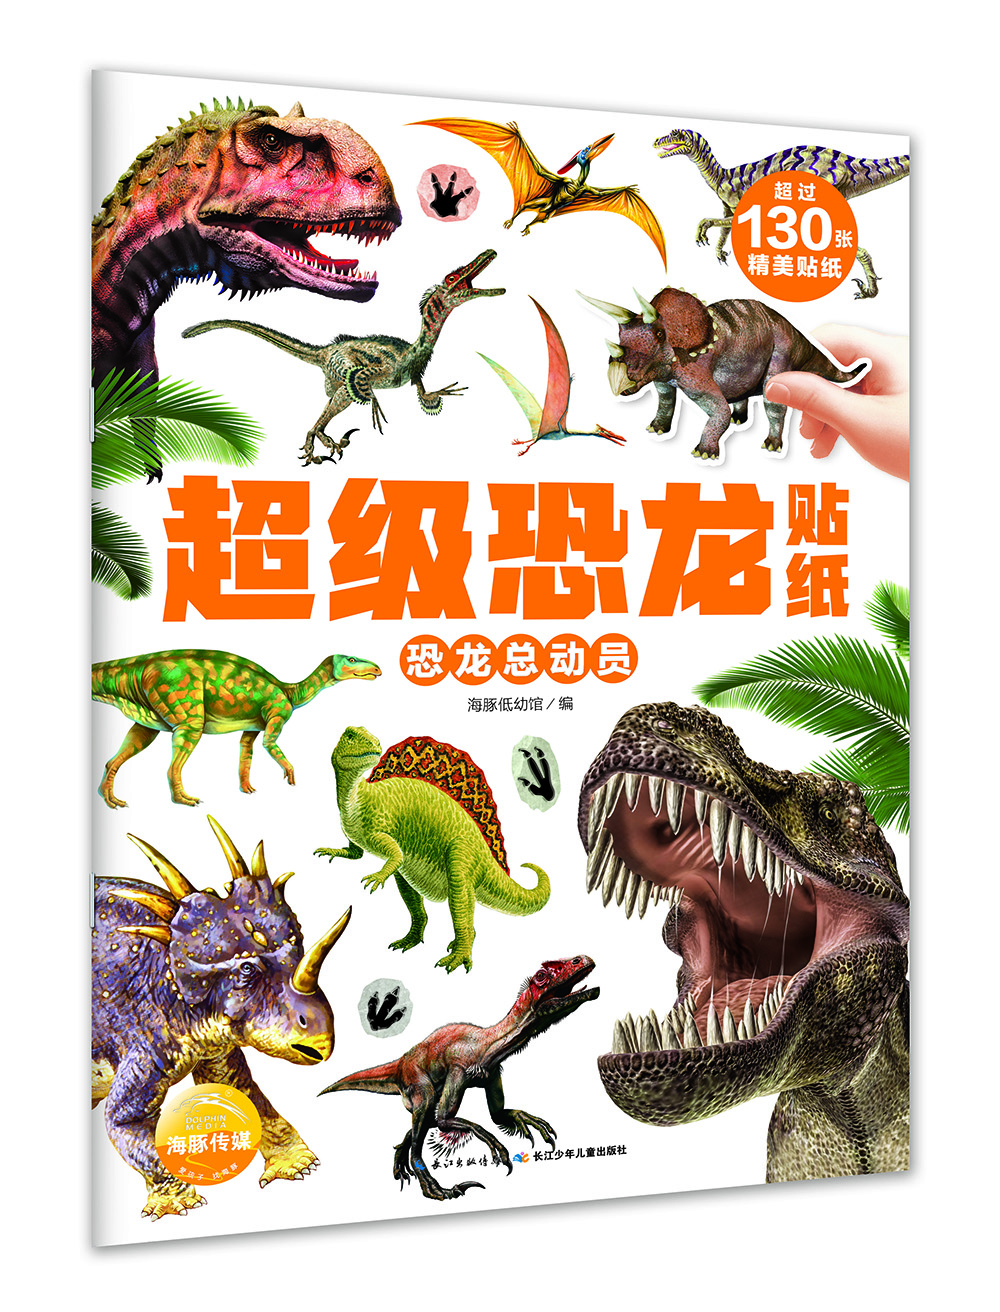 超级恐龙贴纸恐龙总动员 mobi格式下载